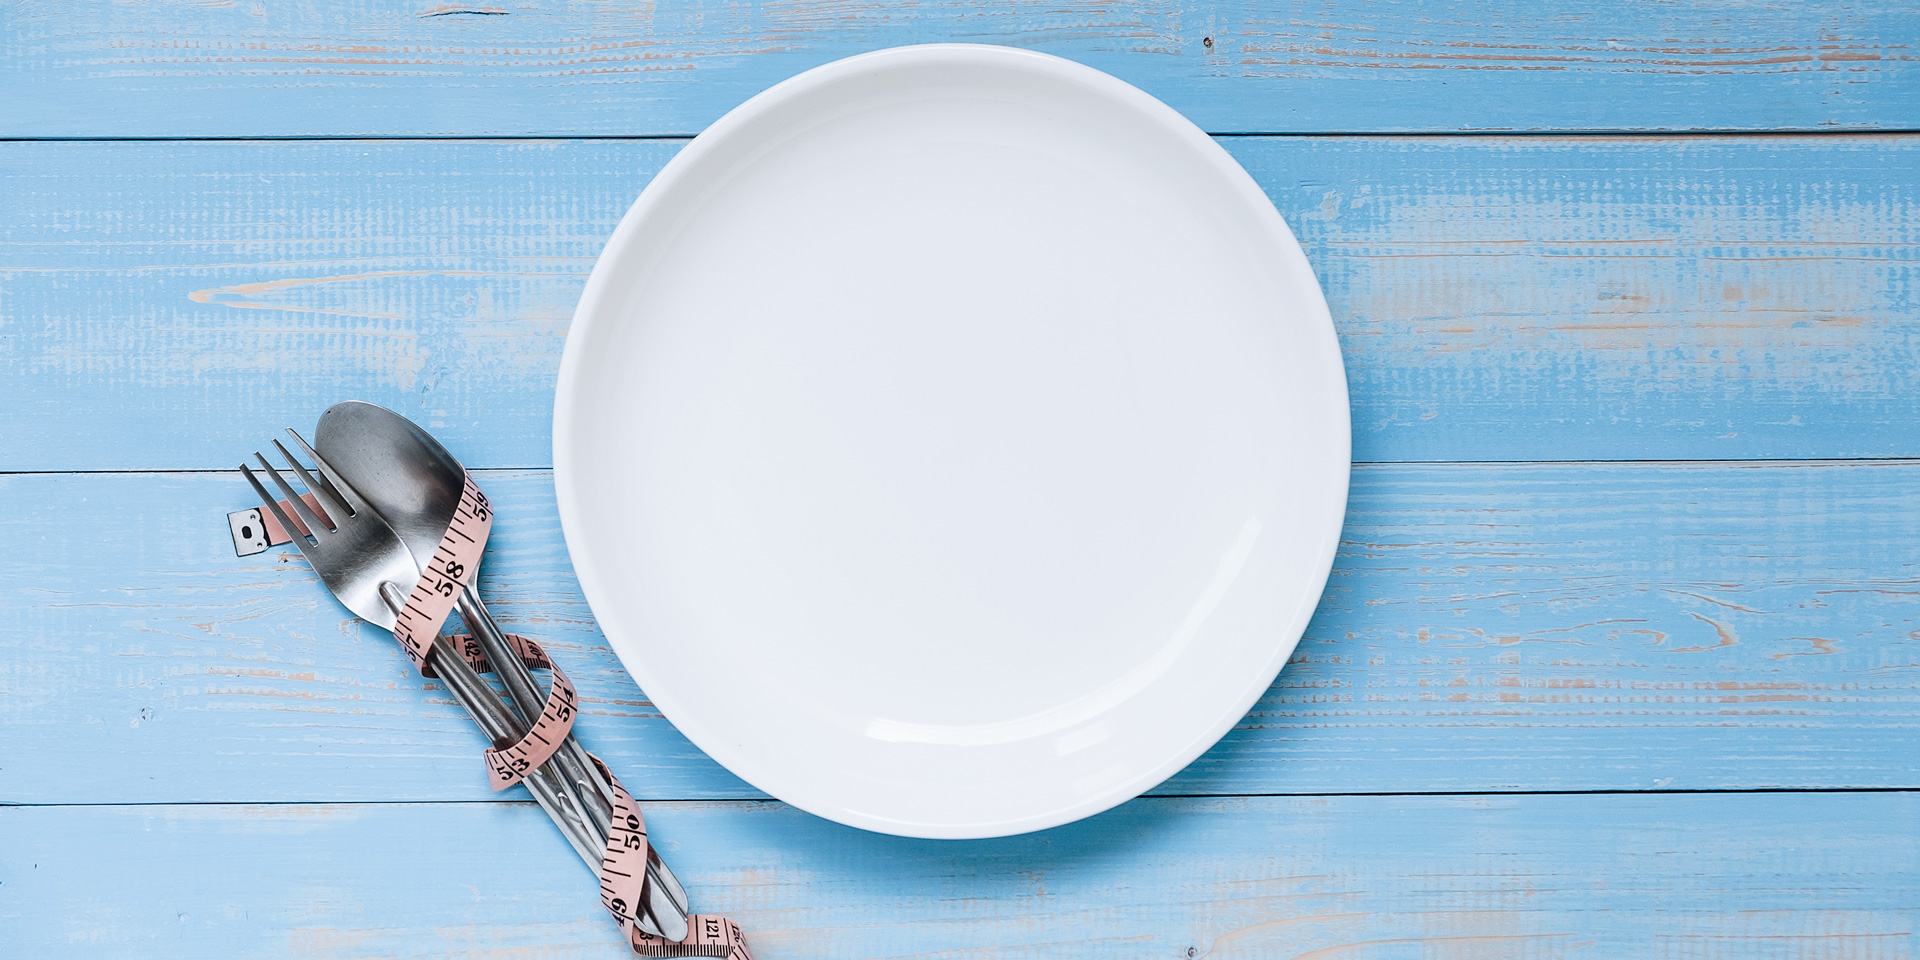 Leerer Teller passend zur Frage, ob Fasten gesund ist.